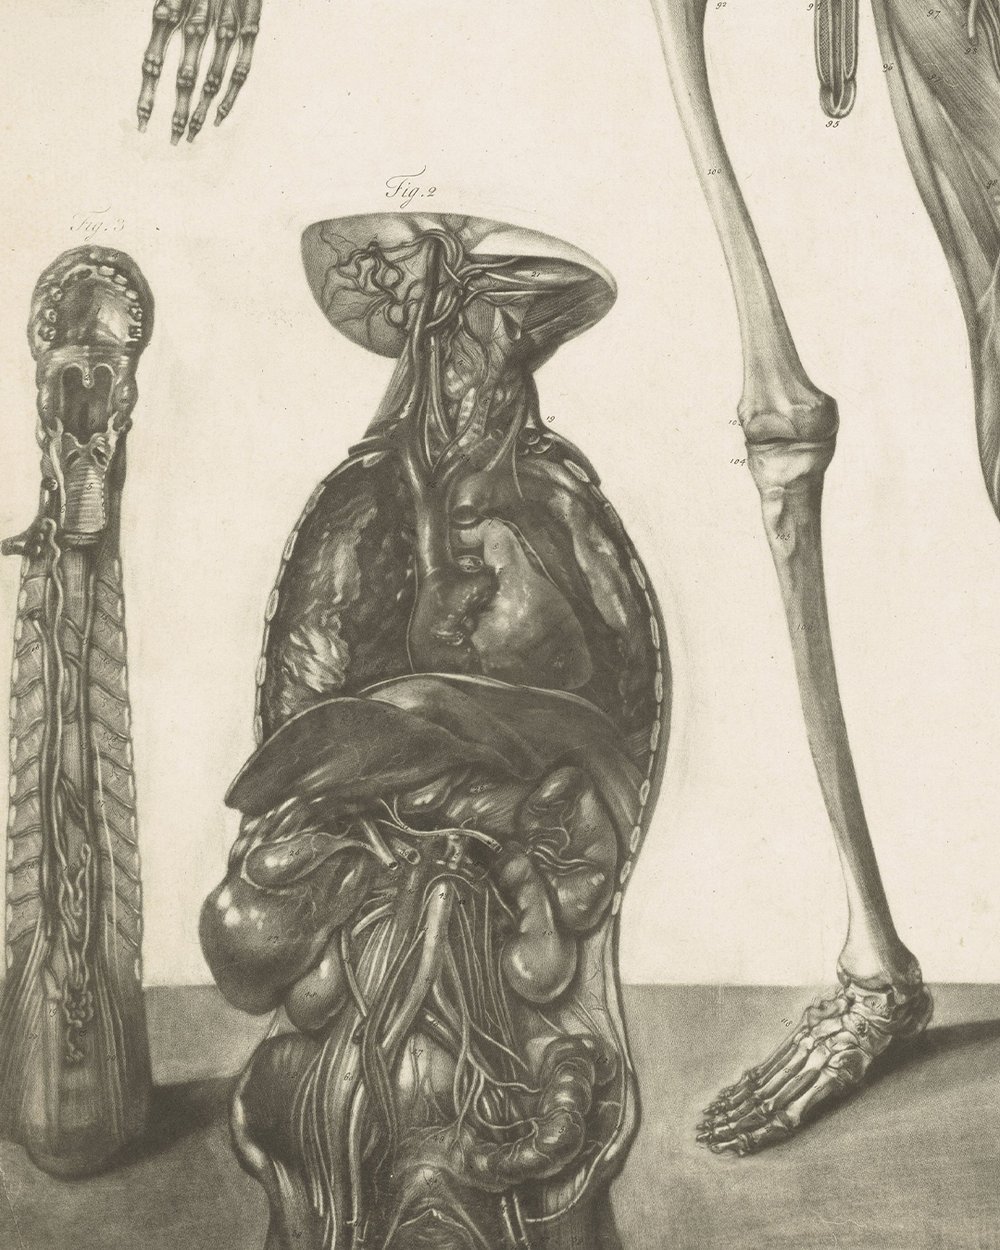 ''Anatomical study of a man'' (1732 - 1785)